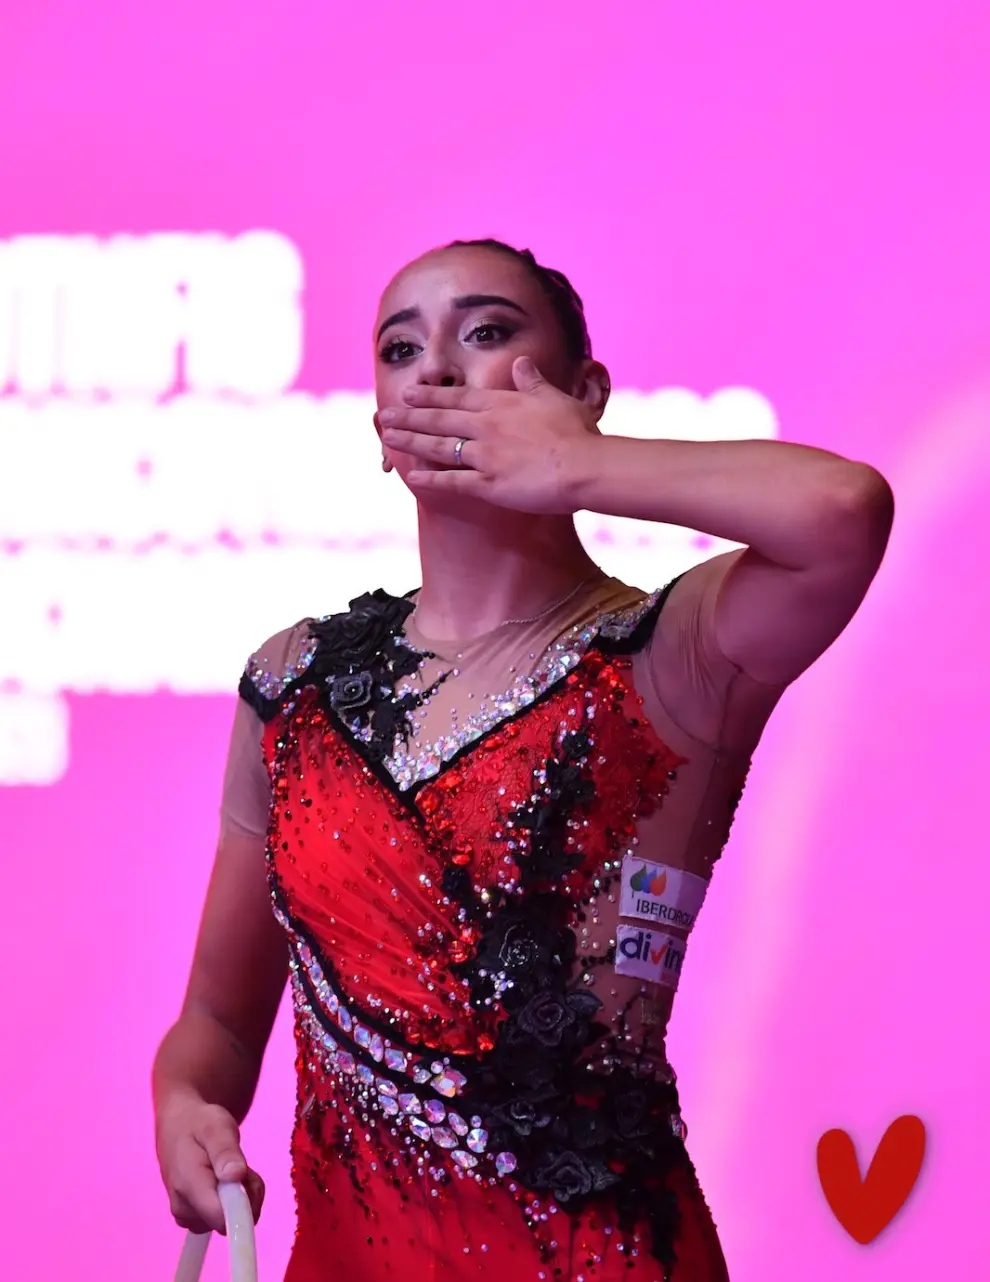 La aragonesa Alba Bautista en la final de aro del Mundial de gimnasia rítmica de Valencia.